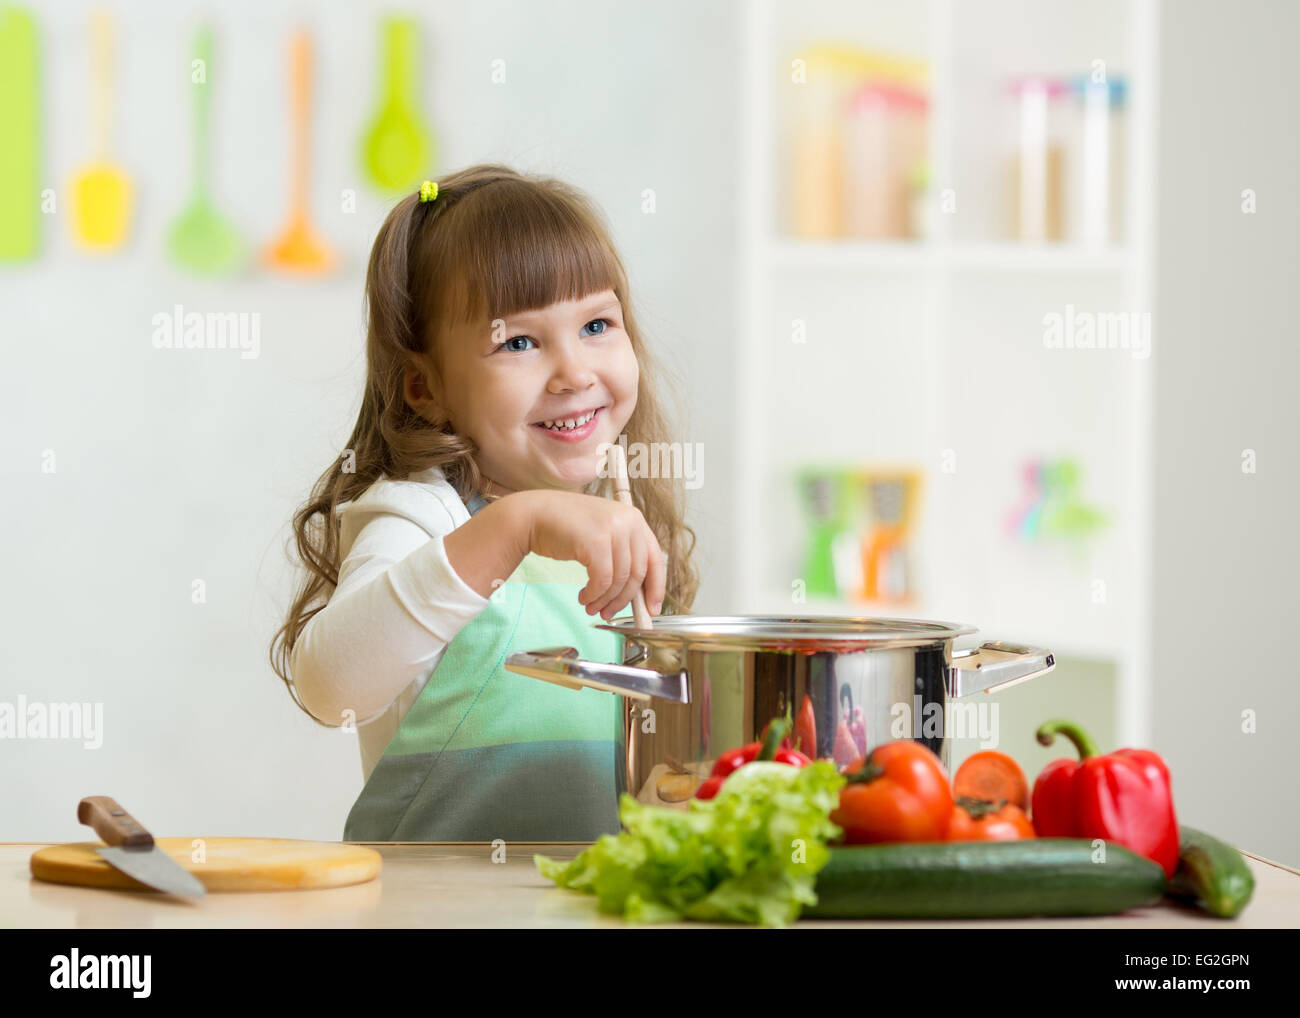 Chico Chica jugando a cocinar y hace una cena Foto de stock